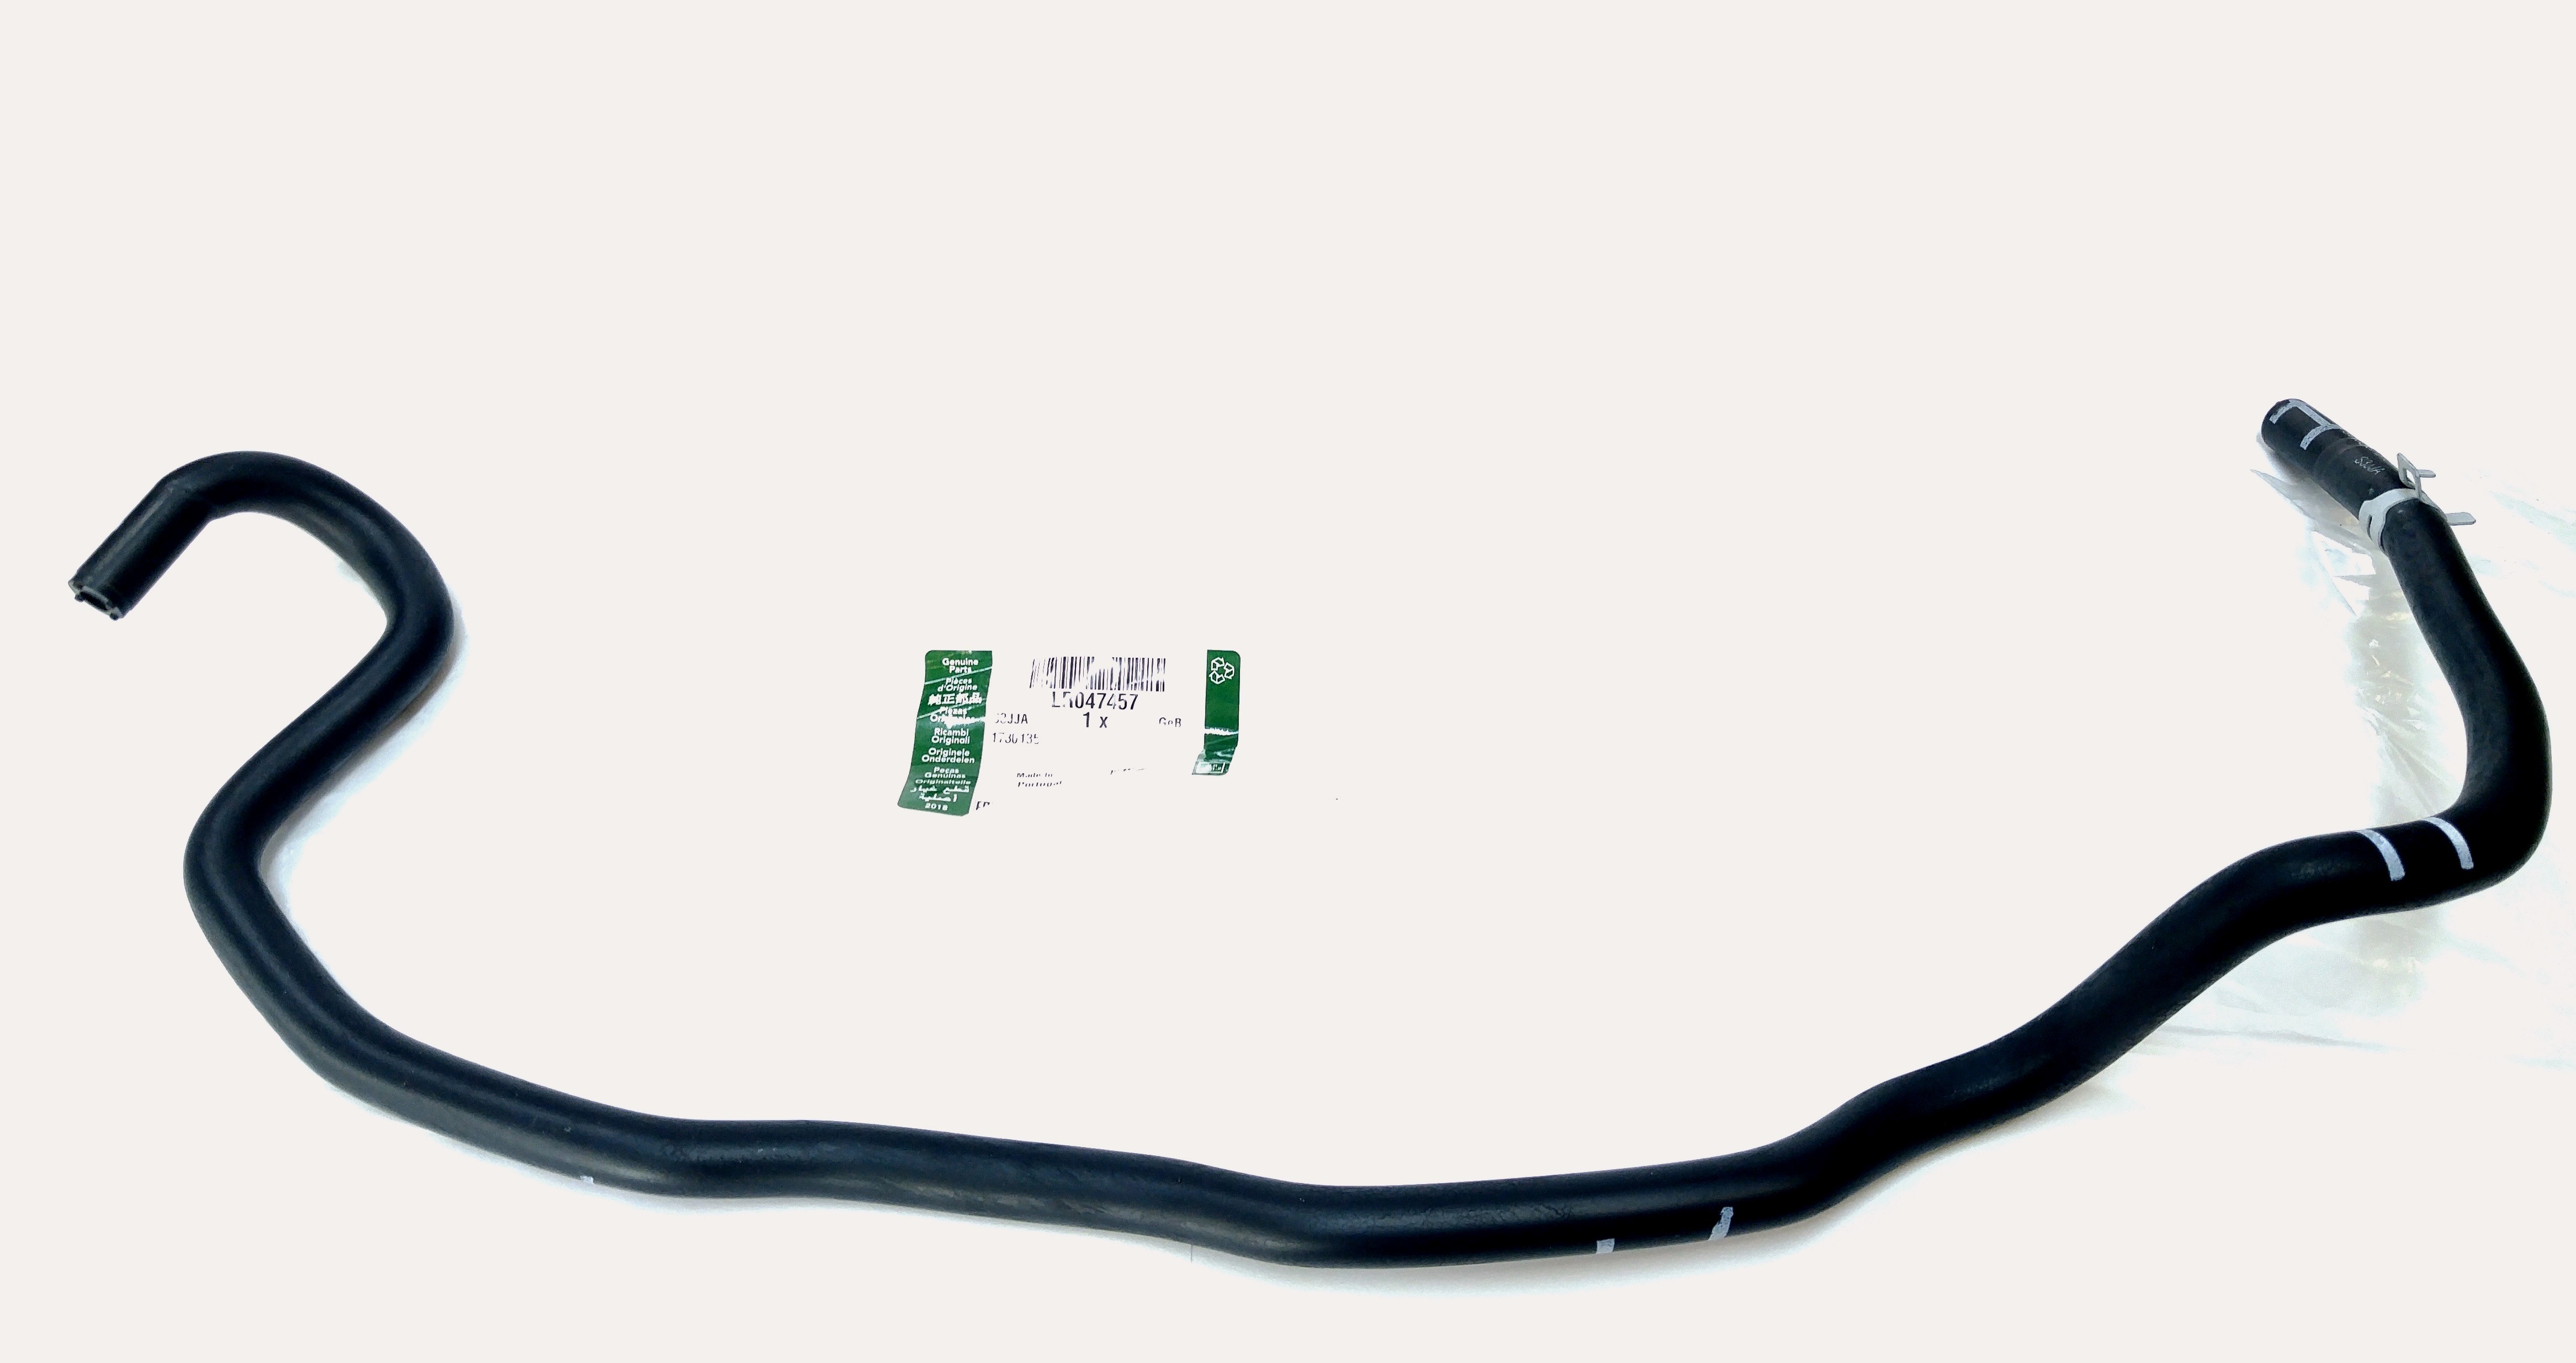 Шланг подогревателя корпуса дроссельной заслонки, впуск 5,0 л V8 (LR047457||LAND ROVER)